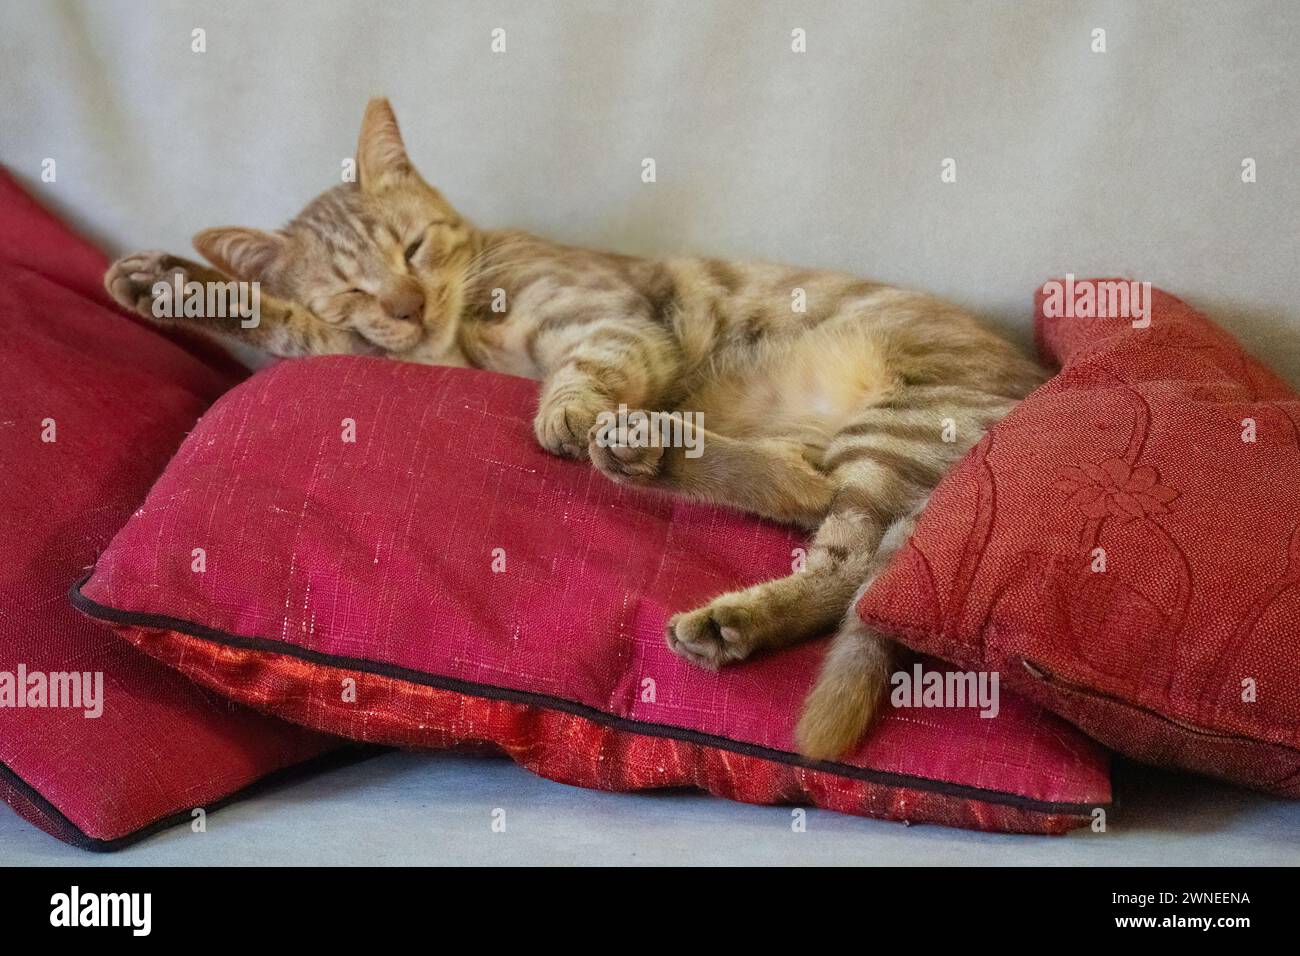 Un chat tabby au gingembre, dormant sur des oreillers rouges sur un canapé de couleur crème. Banque D'Images